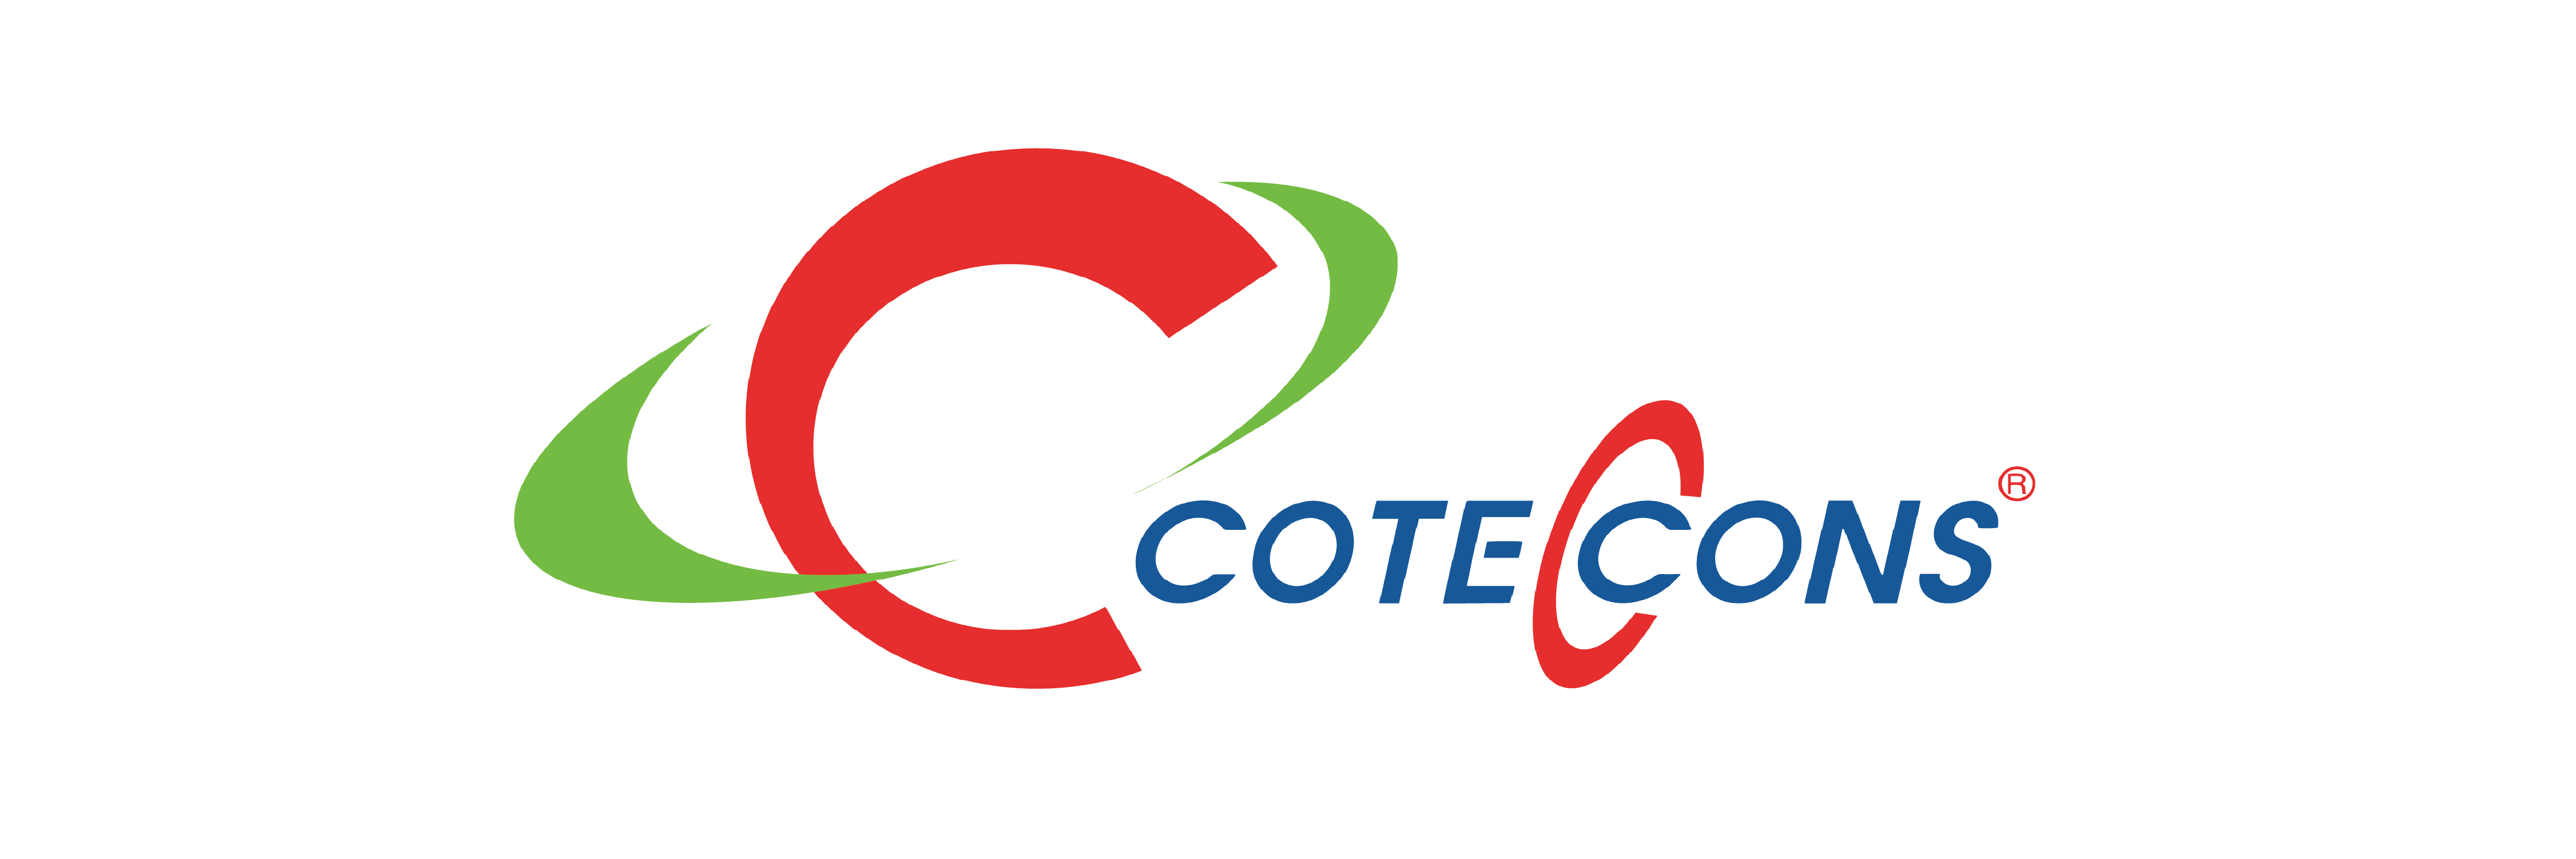 Công ty Coteccons 1